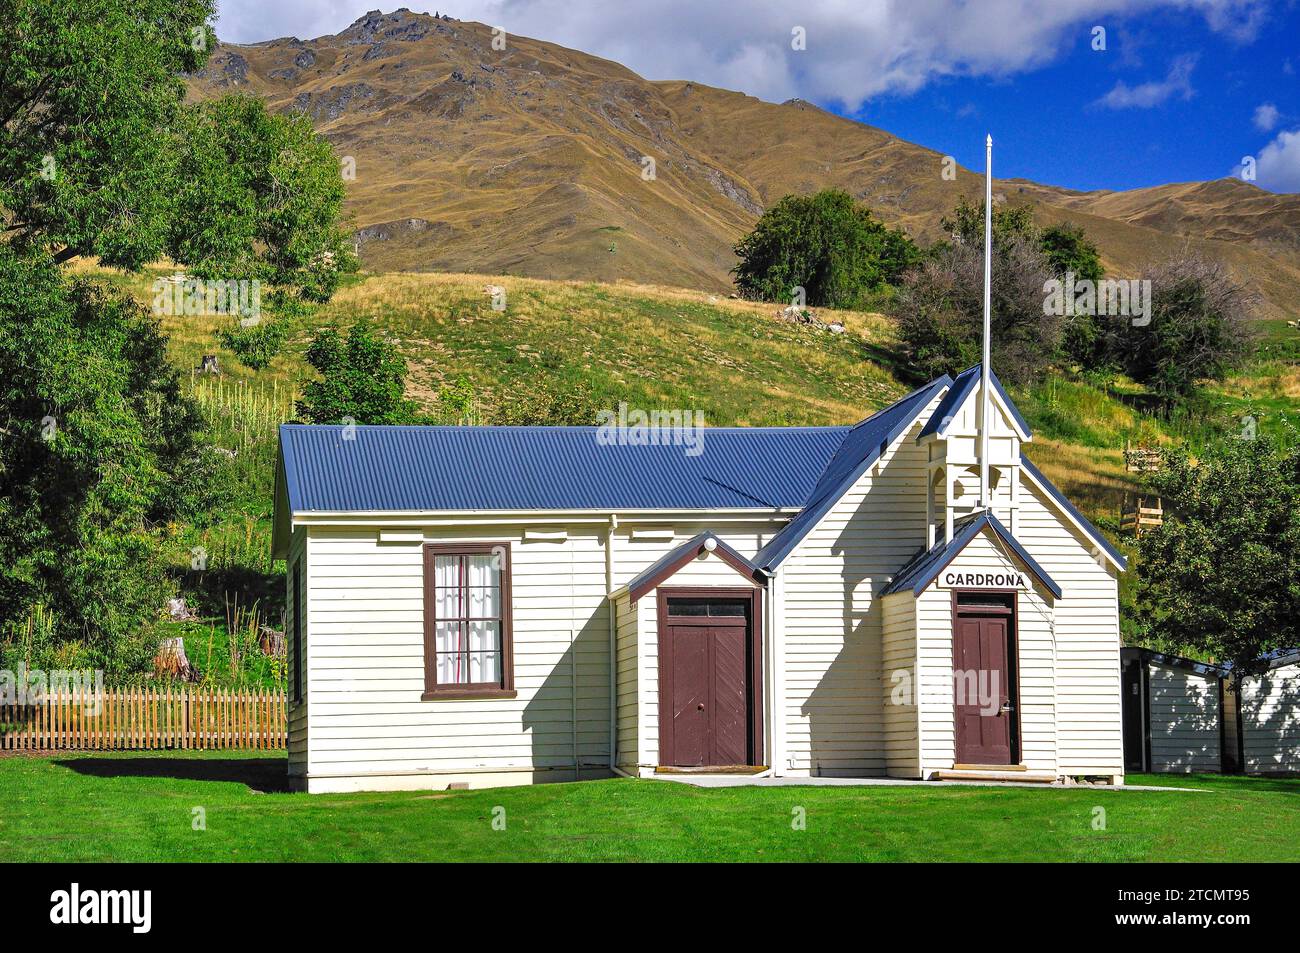 Historic Cardrona Church, Cardrona, Otago Region, South Island, New Zealand Stock Photo